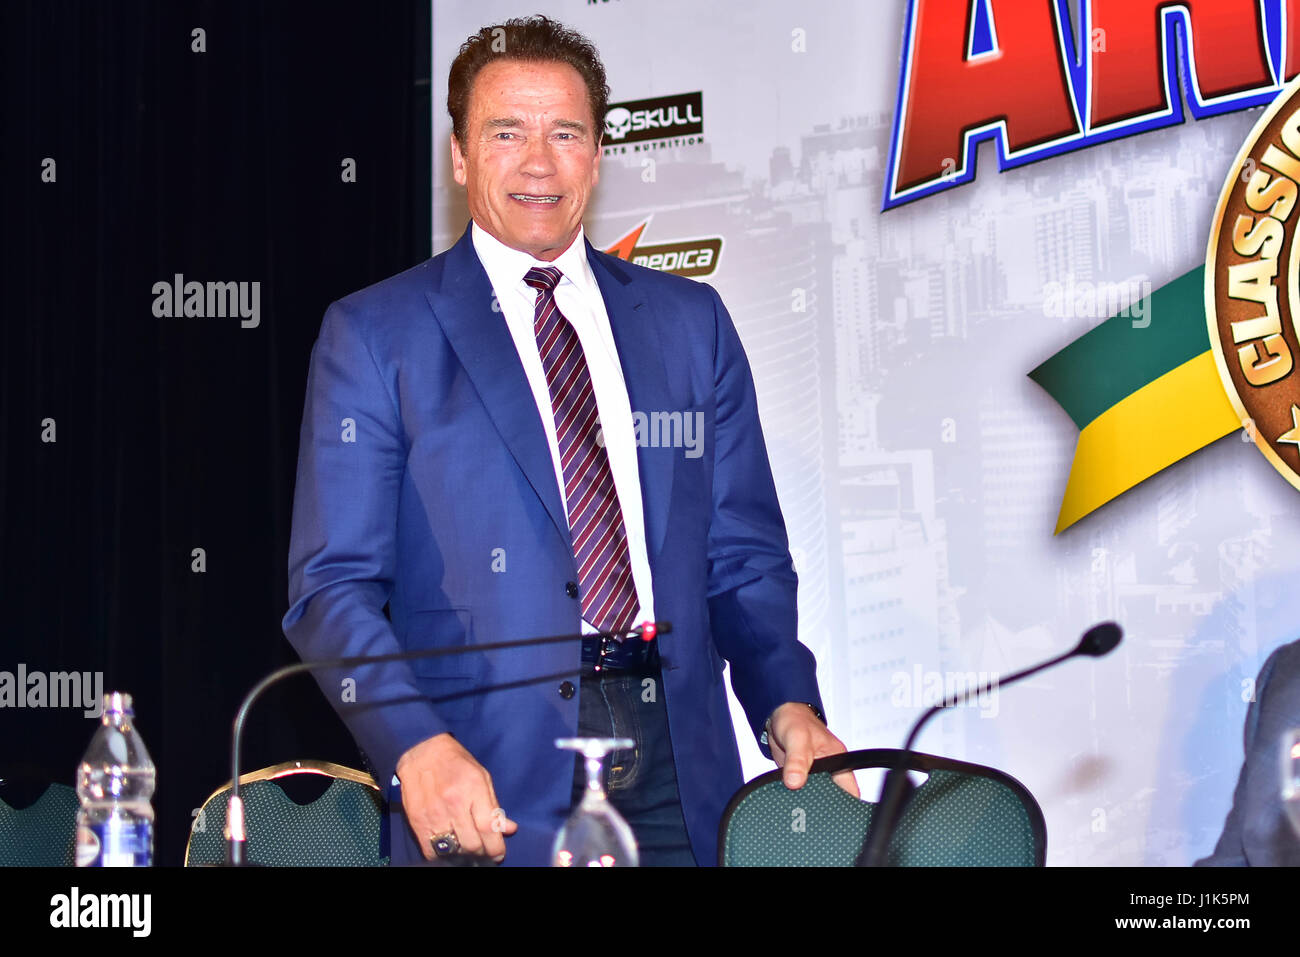 Arnold Schwarzenegger, gehalten im Rahmen einer Pressekonferenz, die Arnold Classic Südamerika zu fördern im Hotel Transamerica, südlich von São Paulo (SP), am Freitagabend, 21. Die Arnold Classic debütiert in São Paulo, nach vier Jahren in Rio De Janeiro, mit Superlativ zahlen. (FOTO: EDUARDO CARMIM/BRASILIEN PHOTO PRESS) Stockfoto